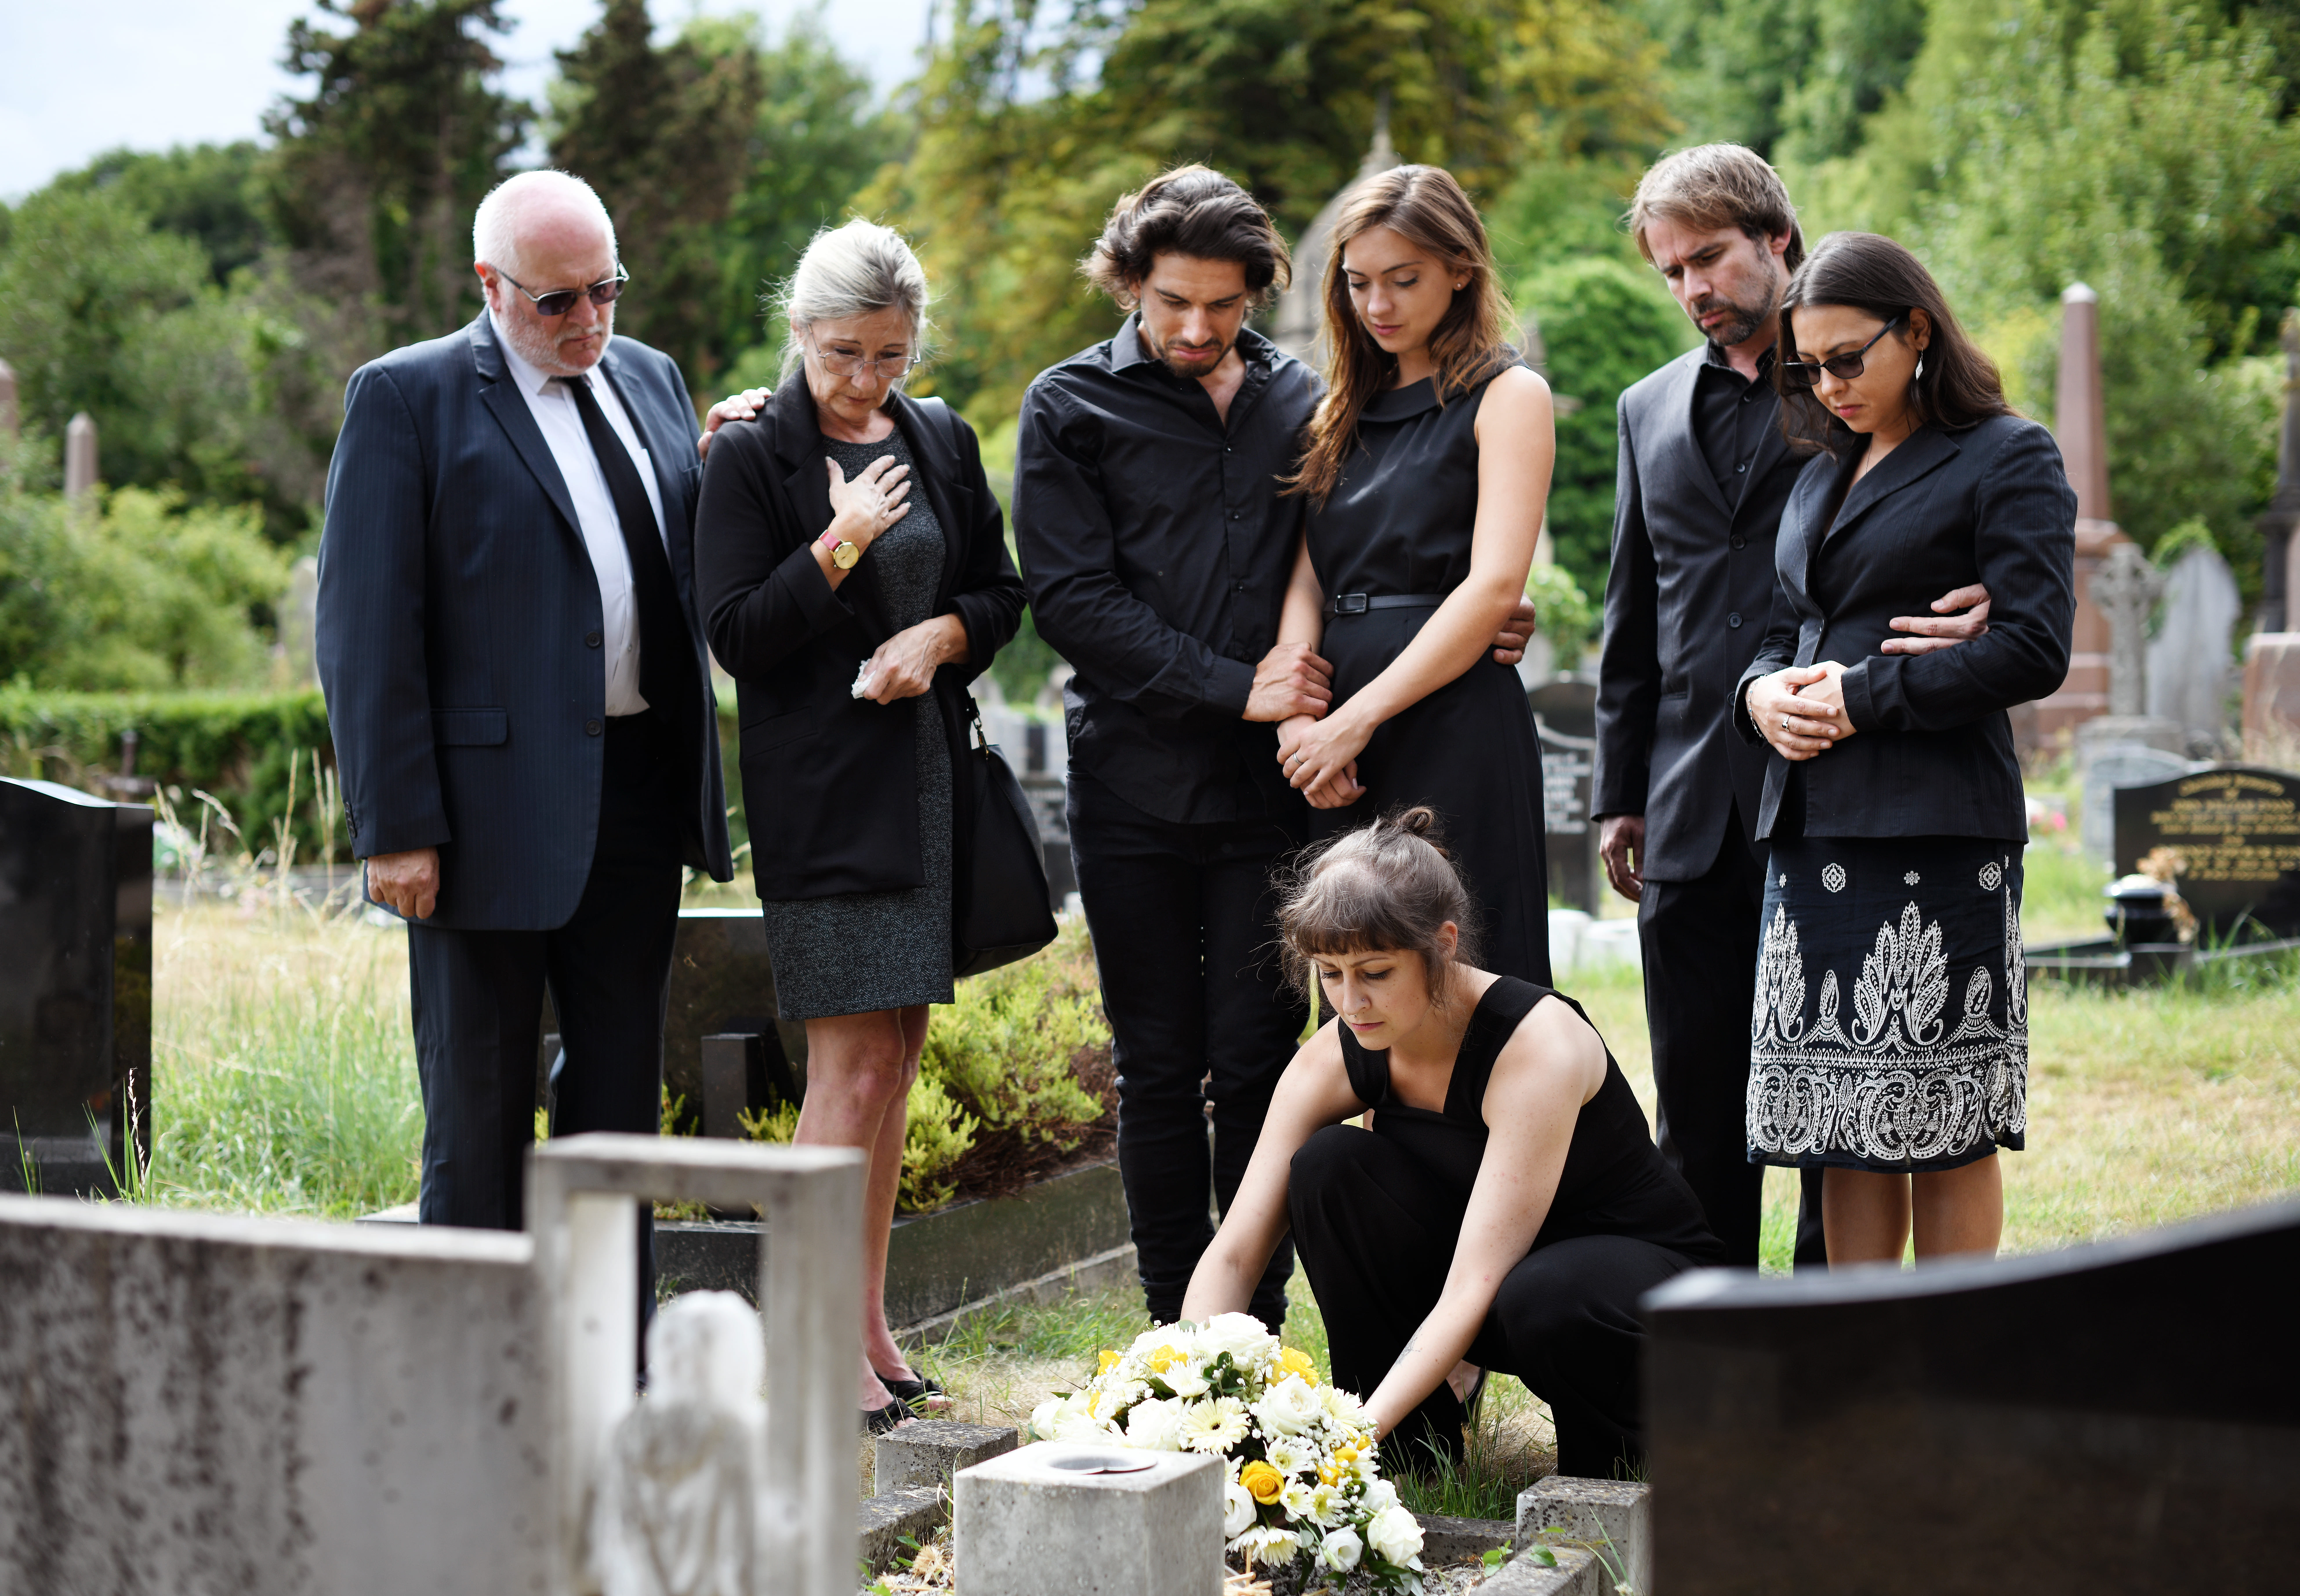 Famille déposant des fleurs sur la tombe dans un cimetière | Source : Shutterstock